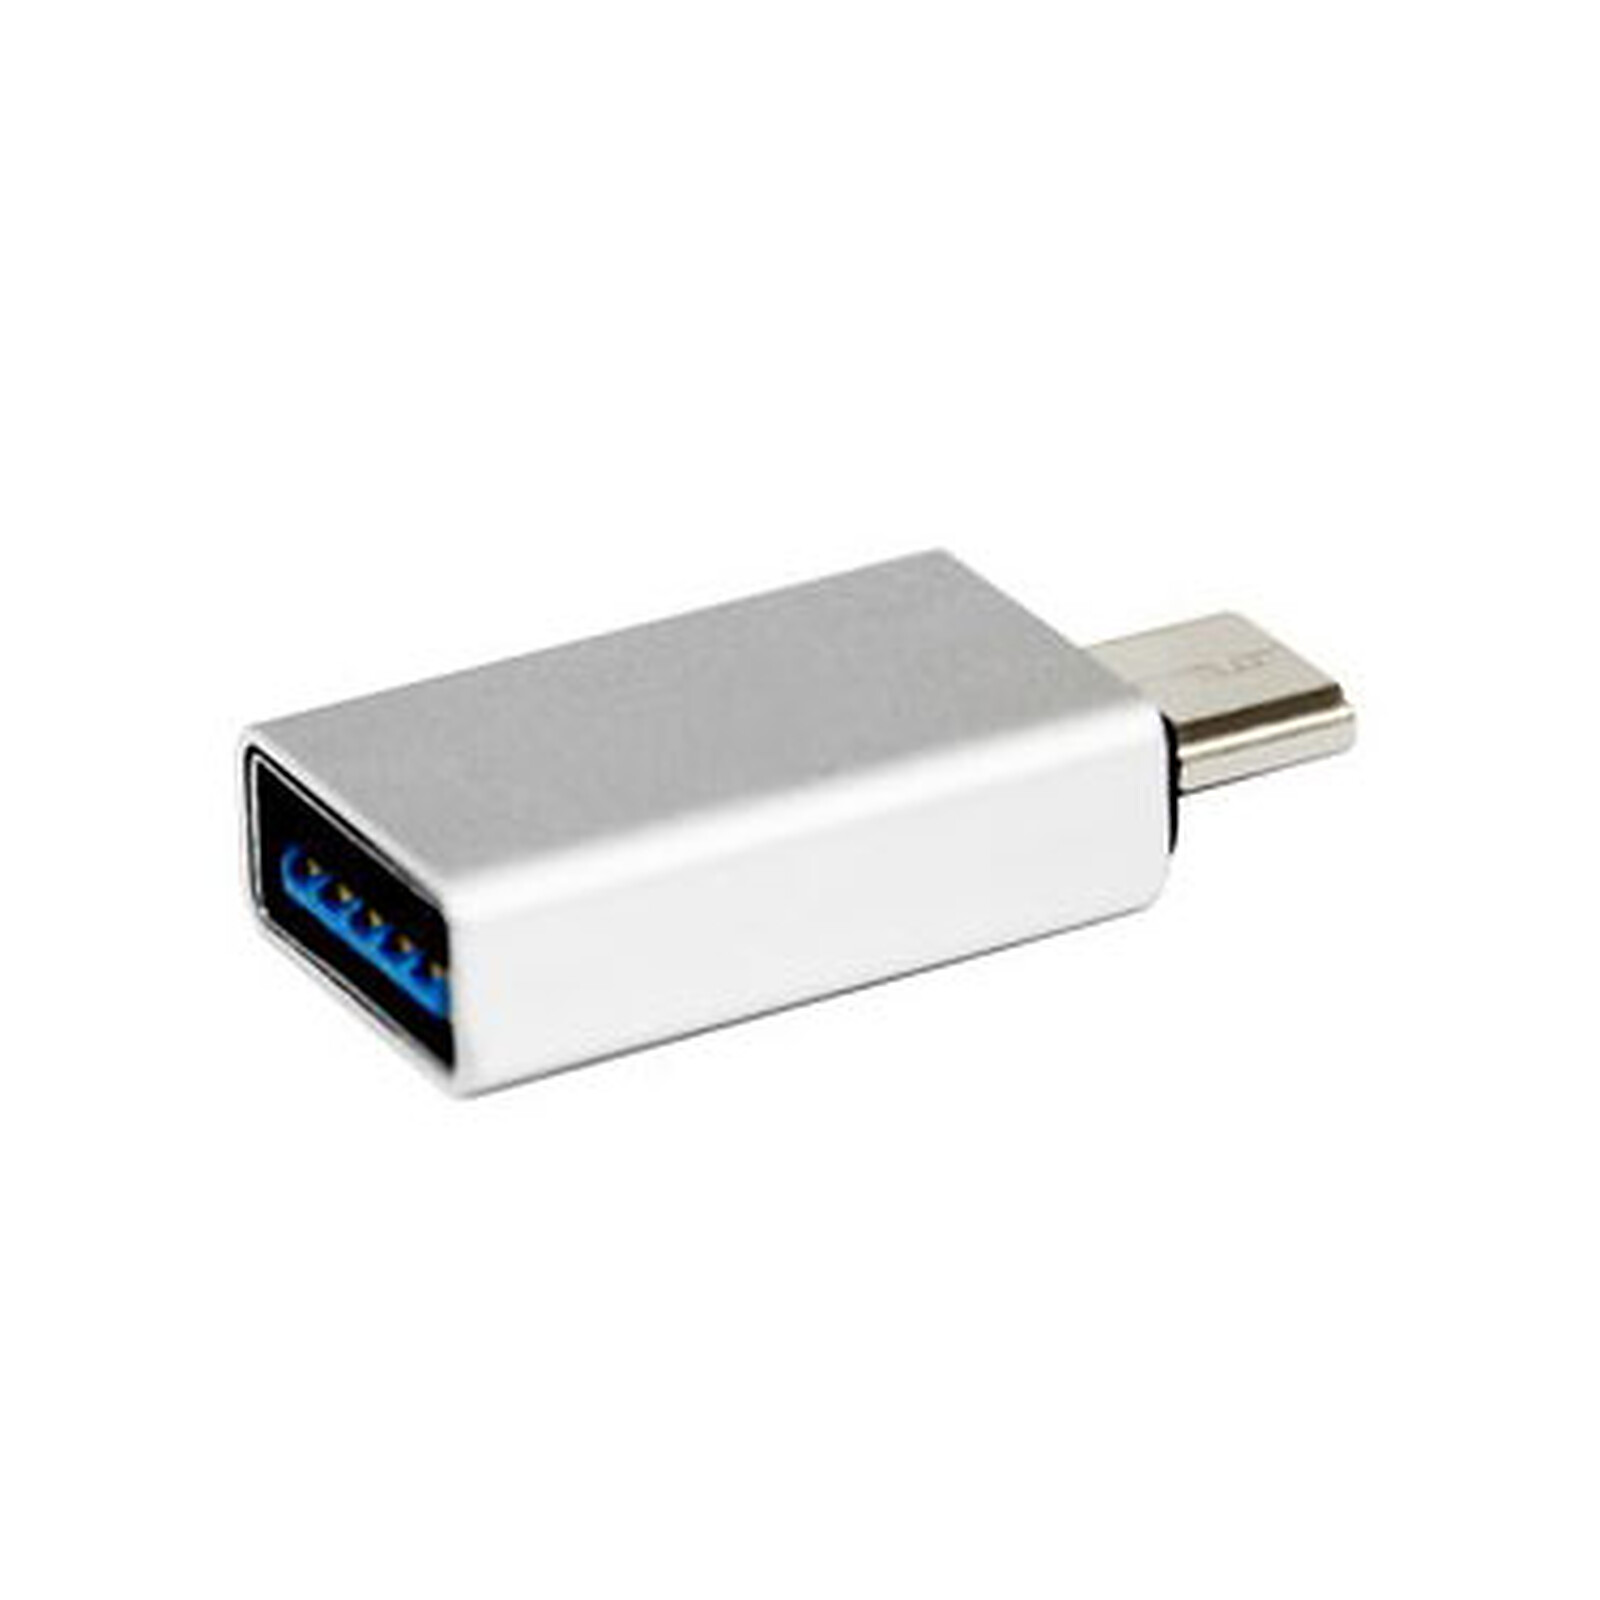 adaptateur USB 3.0 Femelle - USB C Male - Connectique PC